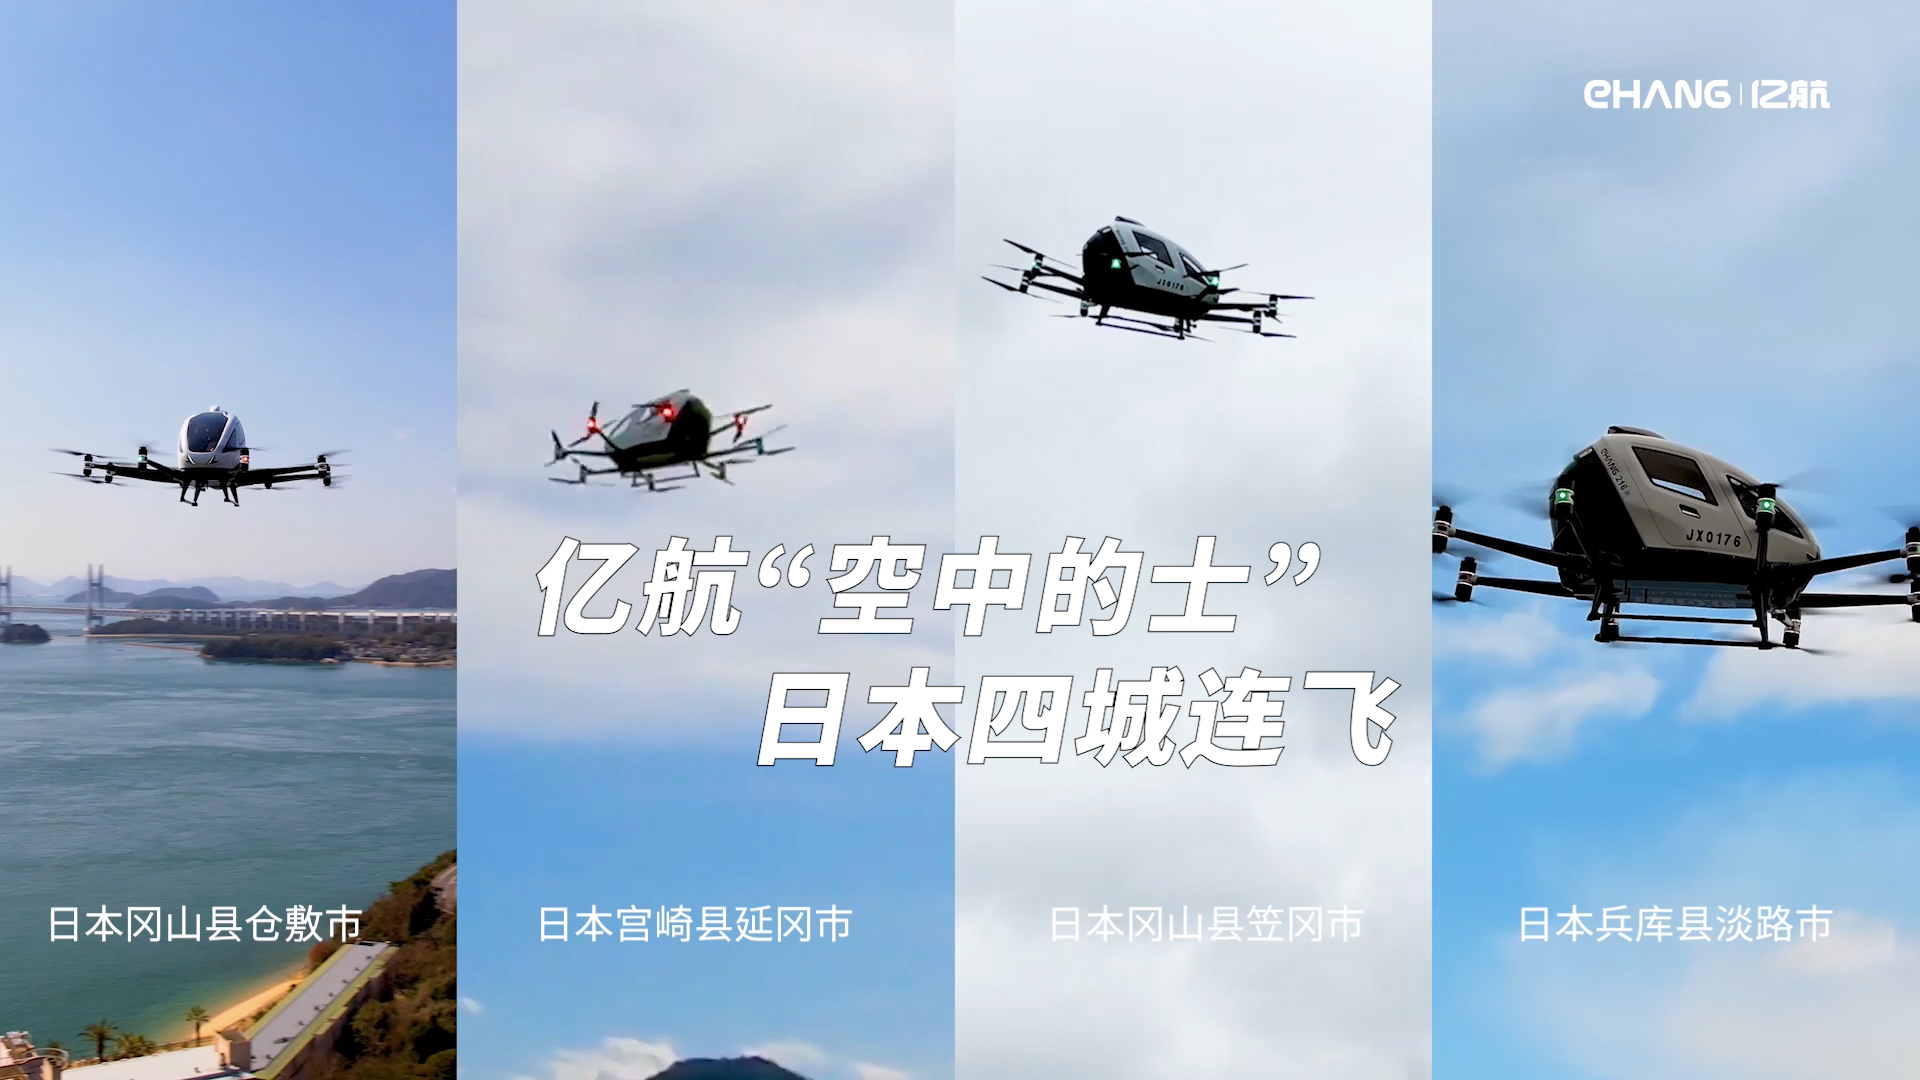 亿航智能EH216-S圆满完成新一轮日本四城巡回飞行演示